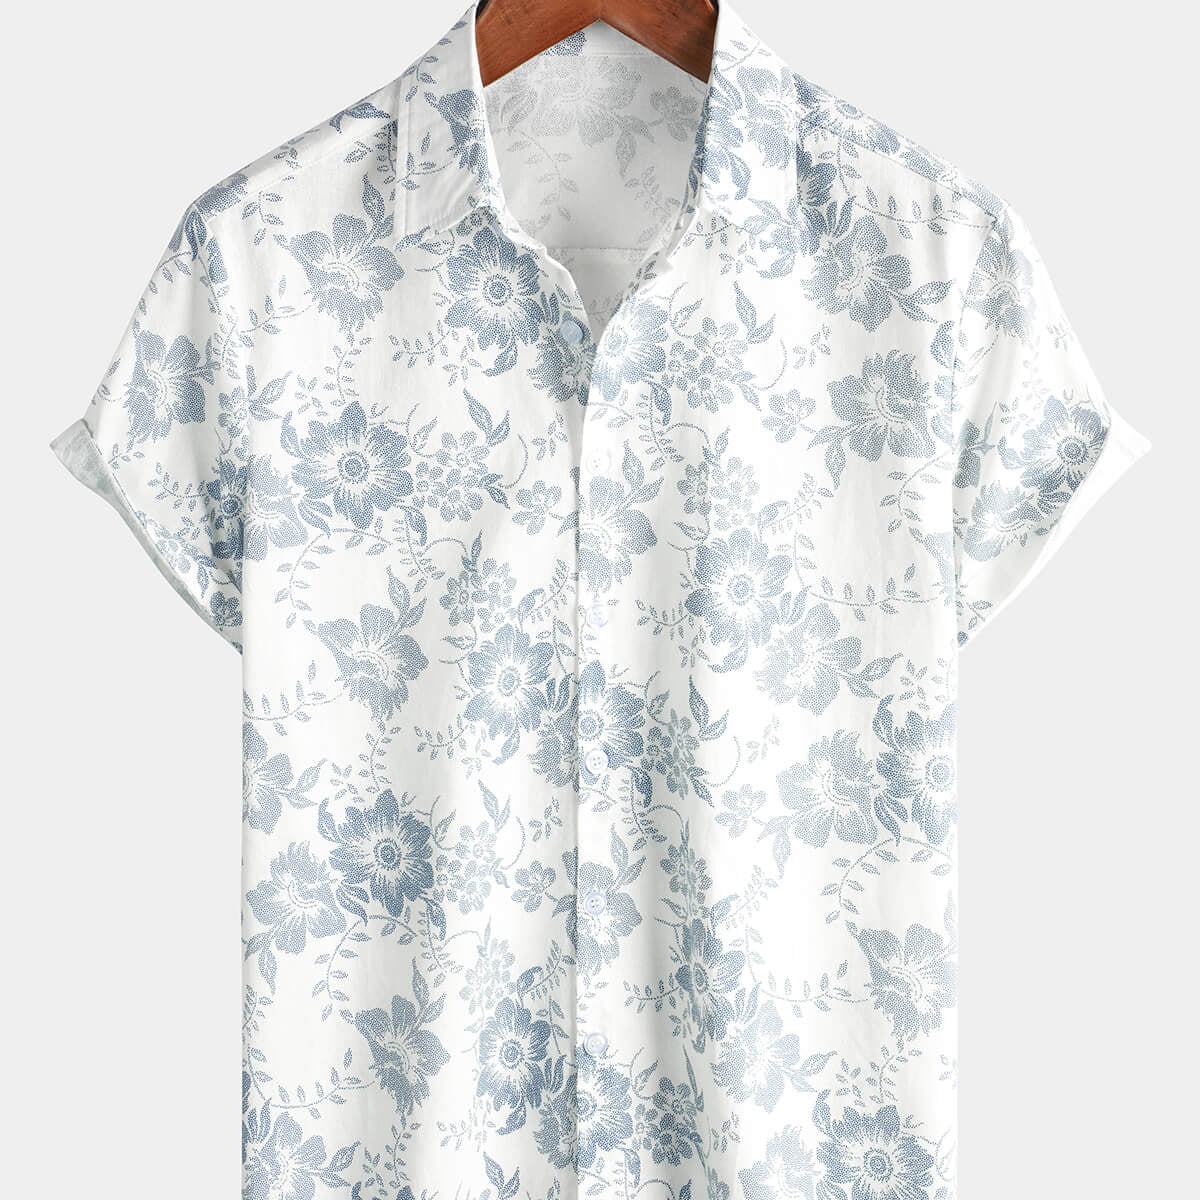 Camisa de verano hawaiana blanca con botones de manga corta transpirable de lino y algodón para vacaciones con estampado Floral vintage para hombre